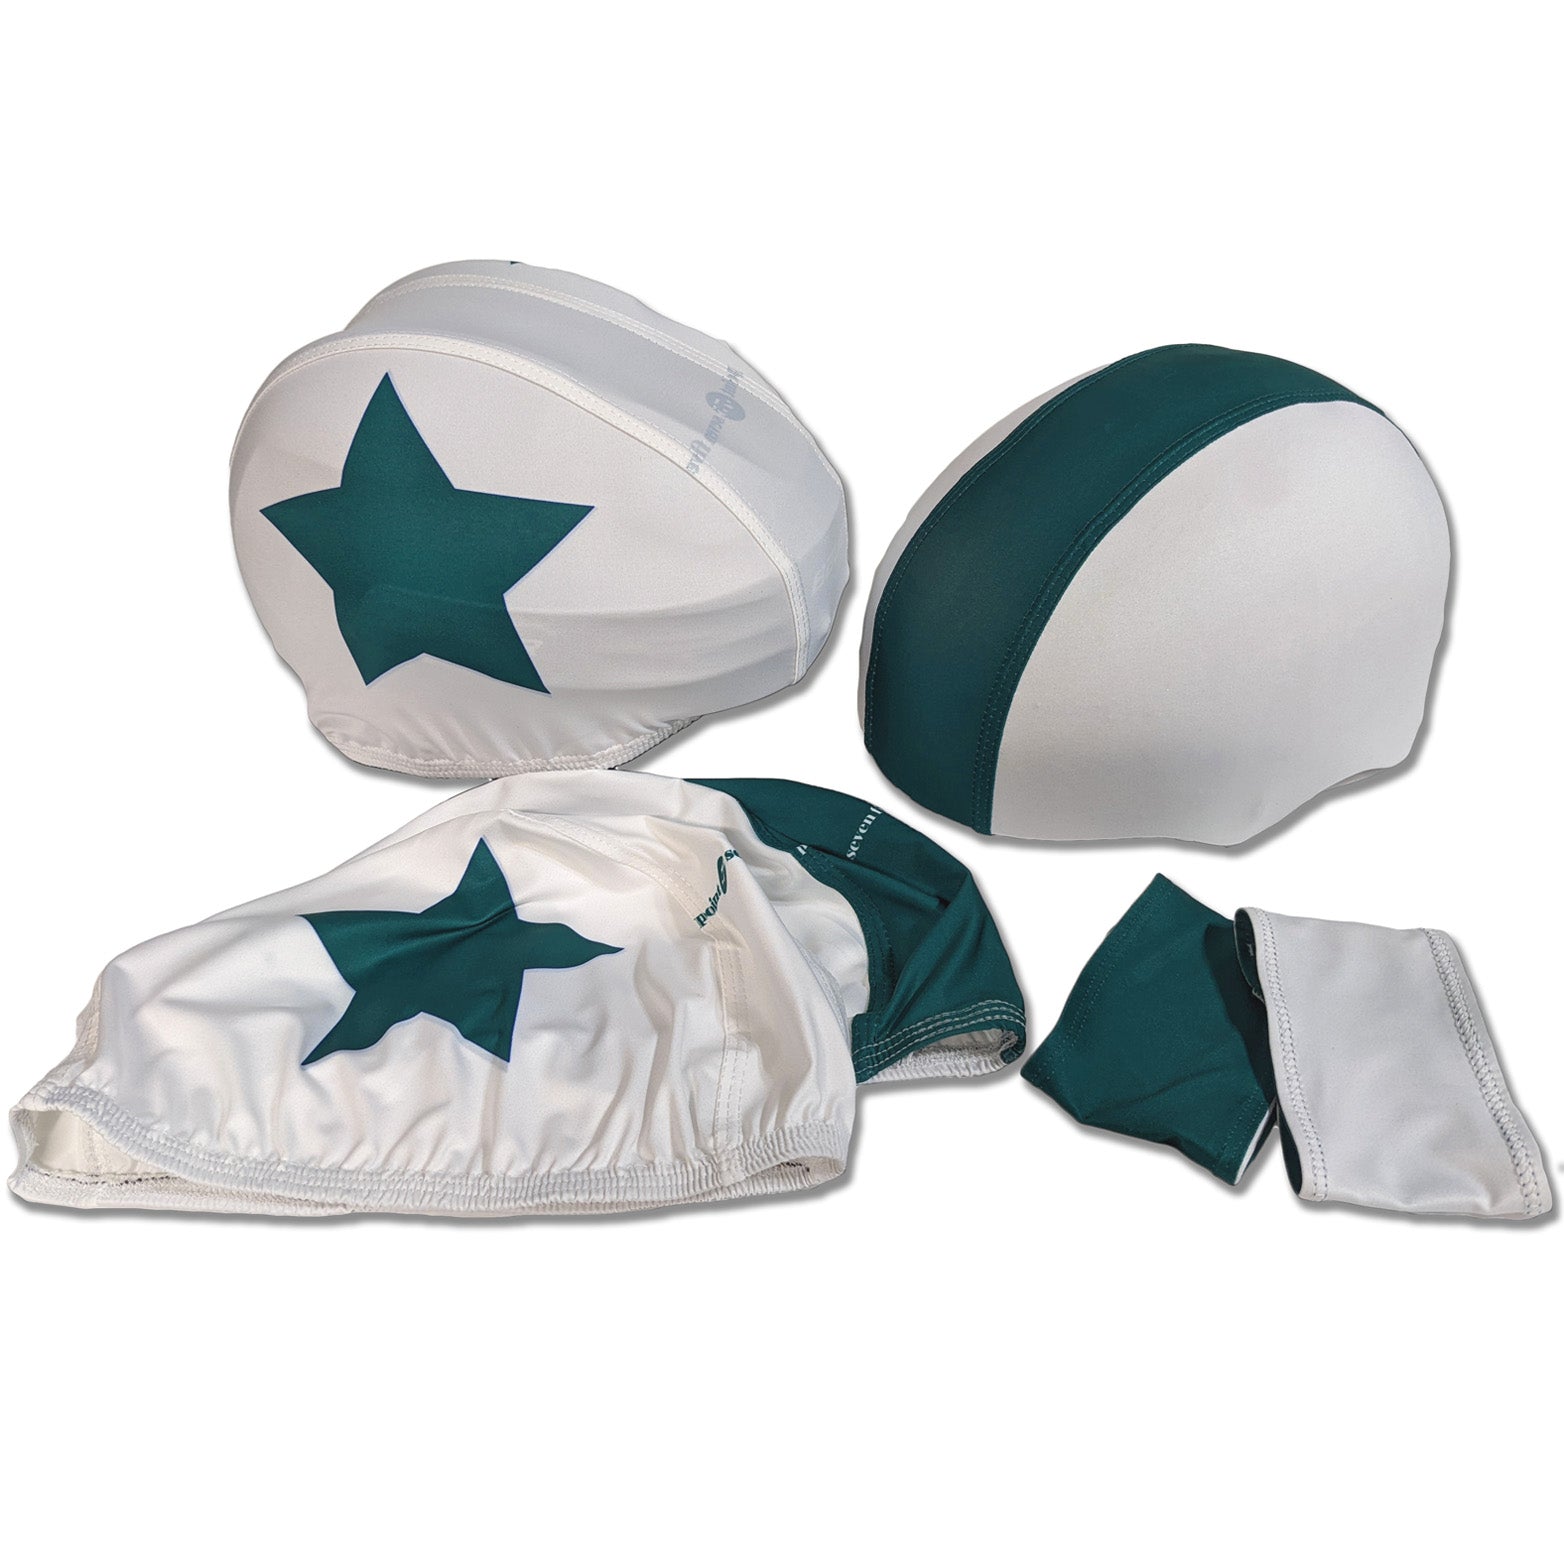 Custom Sublimated Helmet Covers-Full Set